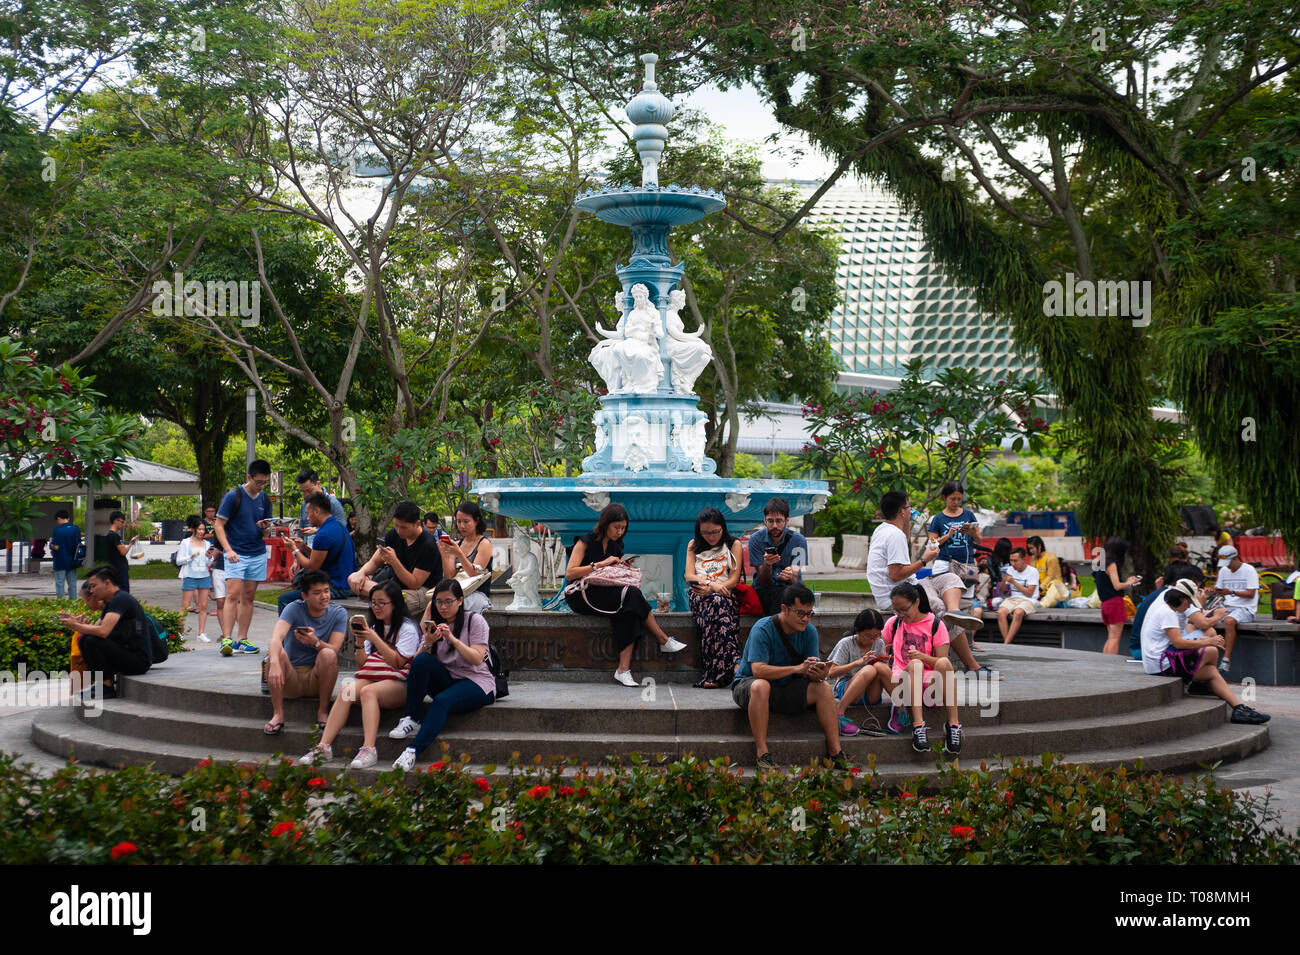 15.04.2018, Singapore, Singapore, Singapore - In un parco, persone giocare il gioco virtuale del computer Pokemon Go, una realtà estesa gioco per dispositivi mobili Foto Stock